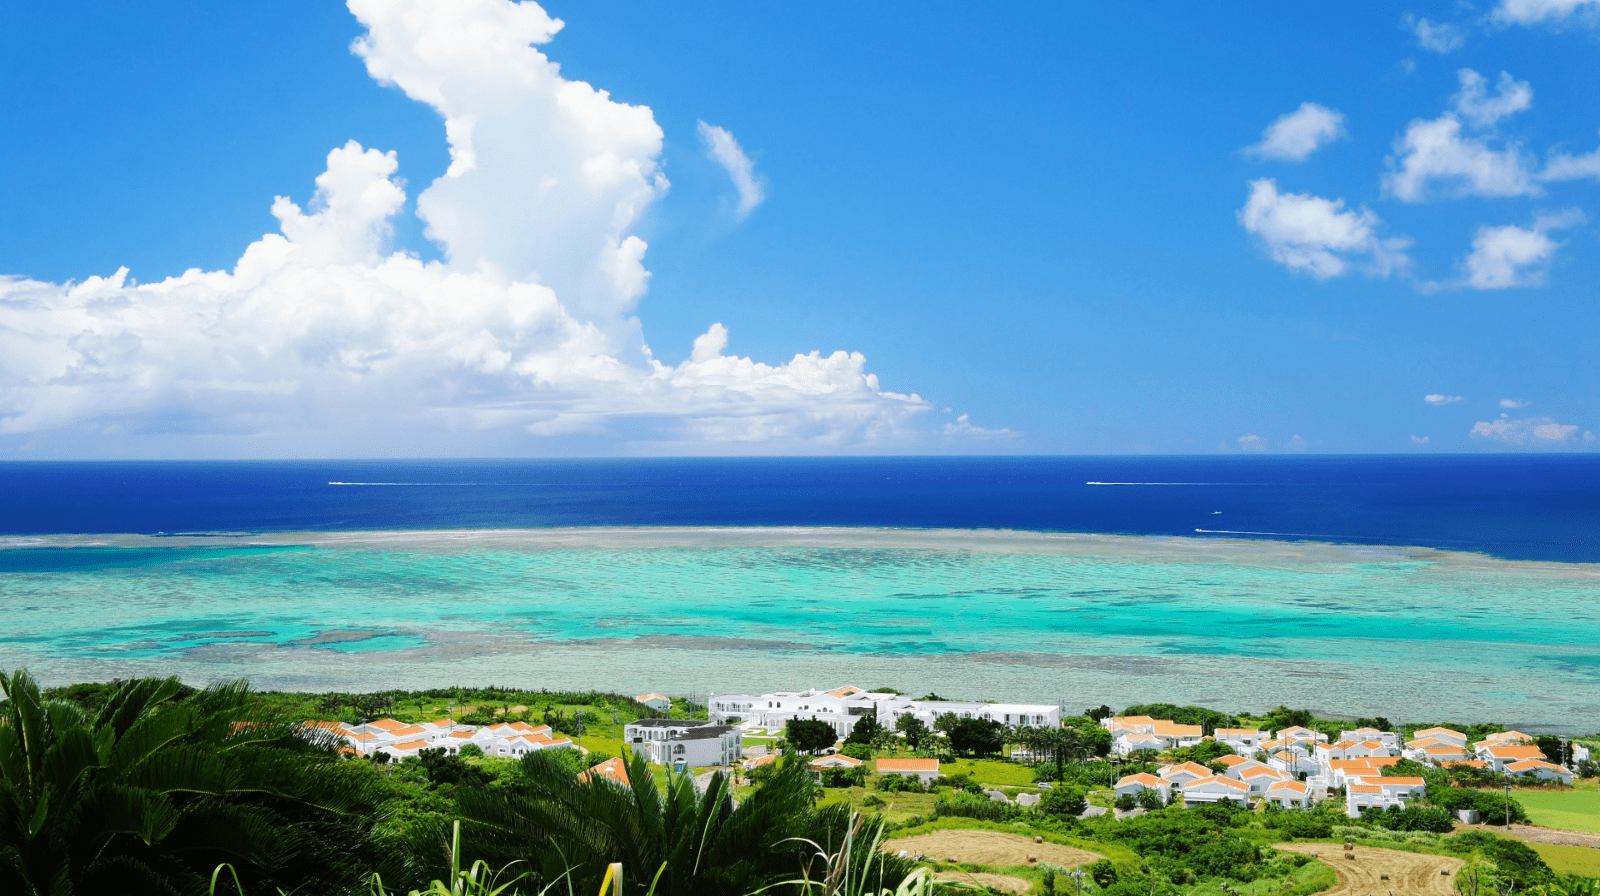 10 Best Beach Resorts in Okinawa 2020